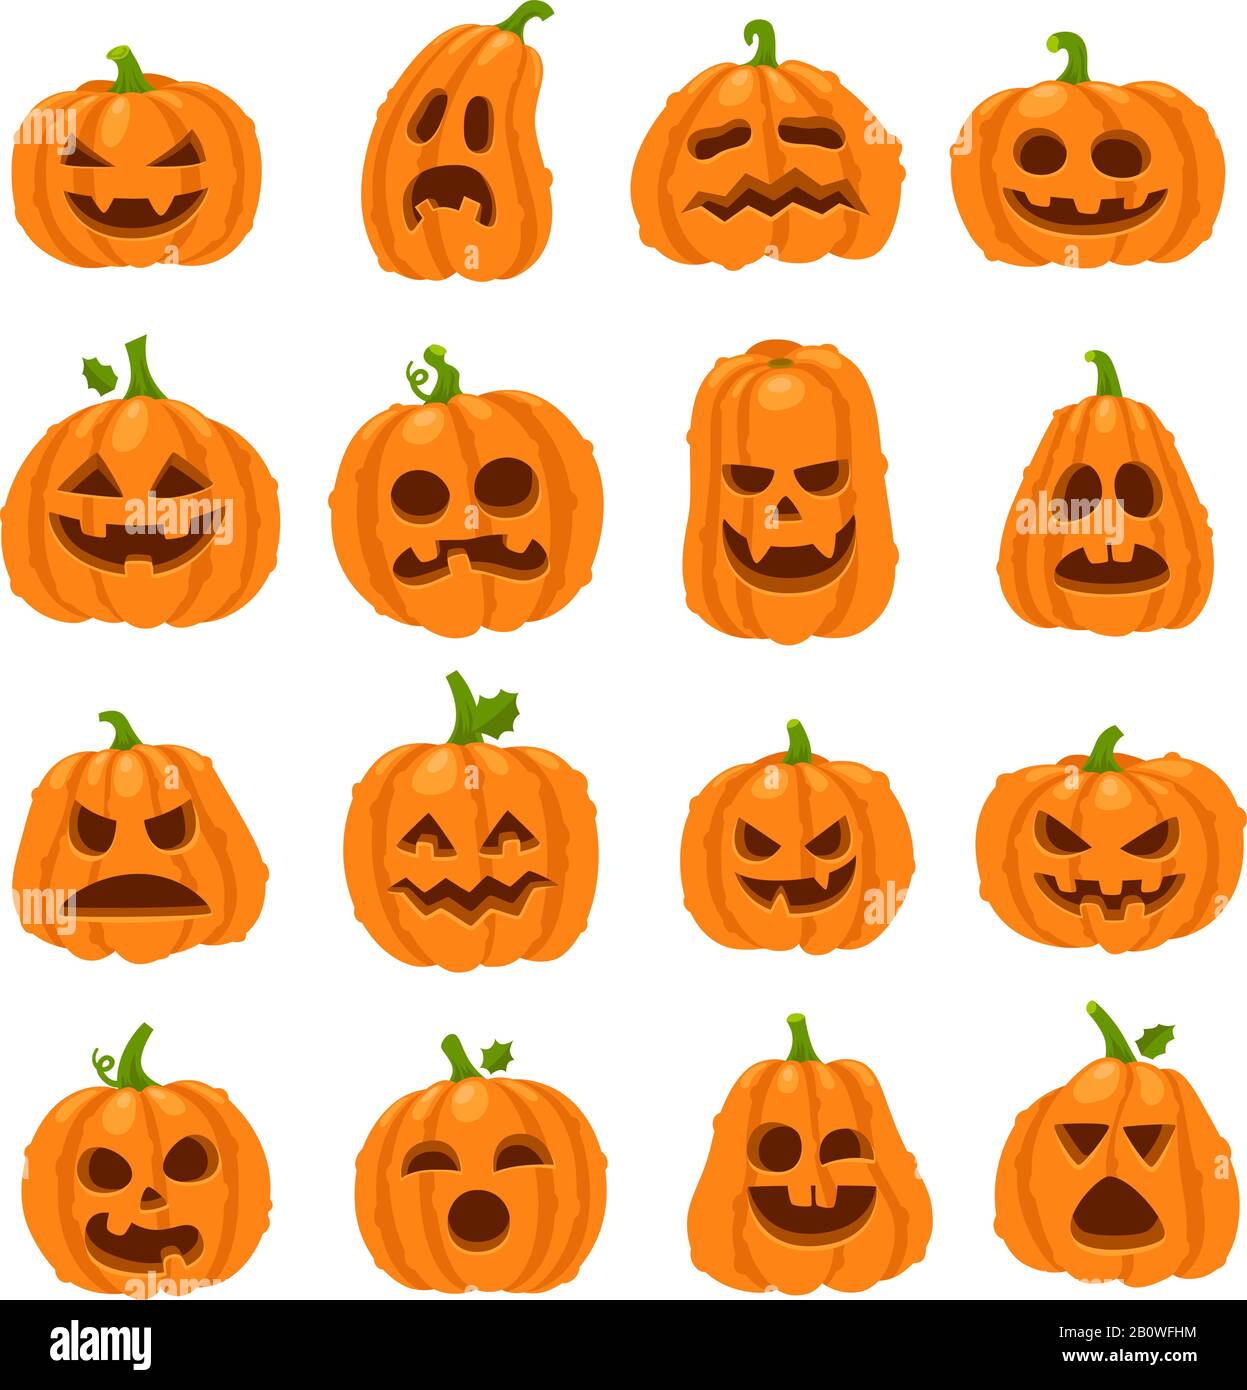 Cartone animato Halloween zucca. Zucche arancioni con carving spaventose facce sorridenti. Decorazione Gourd verdure felice faccia vettore insieme di icone Illustrazione Vettoriale